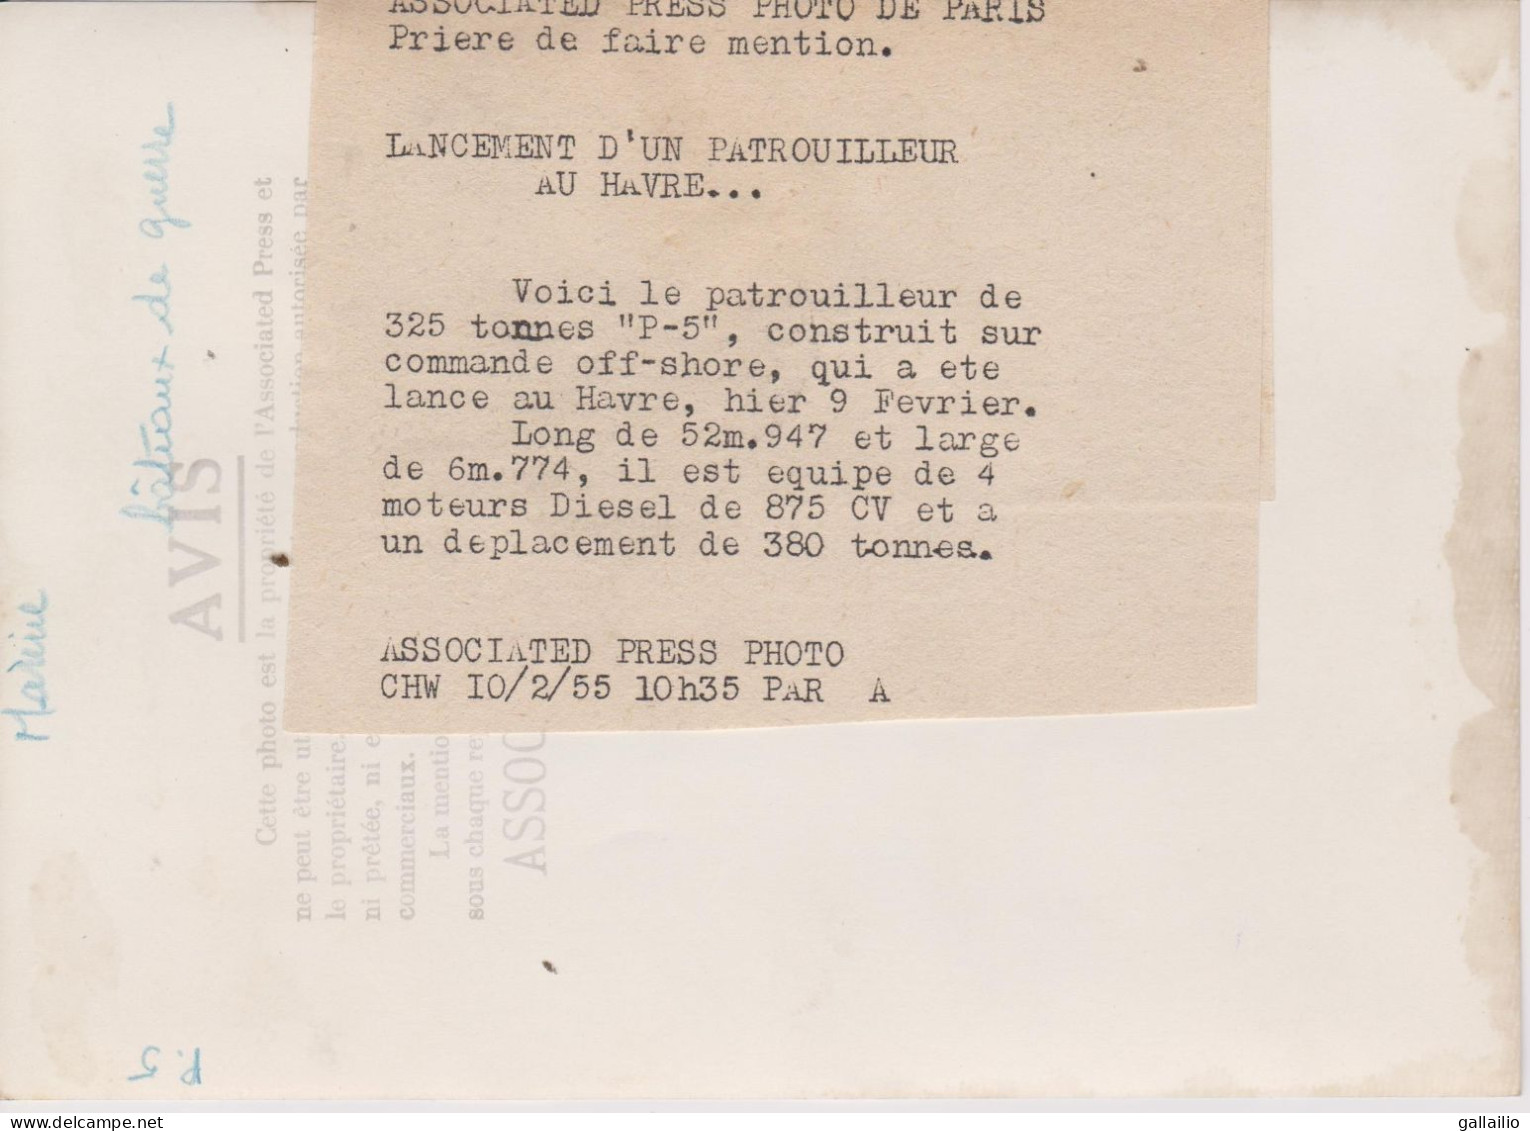 PHOTO PRESSE LANCEMENT DU PATROUILLEUR P 5 AU HAVRE PHOTO ASSOCIATED PRESS FEVRIER 1955 FORMAT 13 X 18 CMS - Bateaux